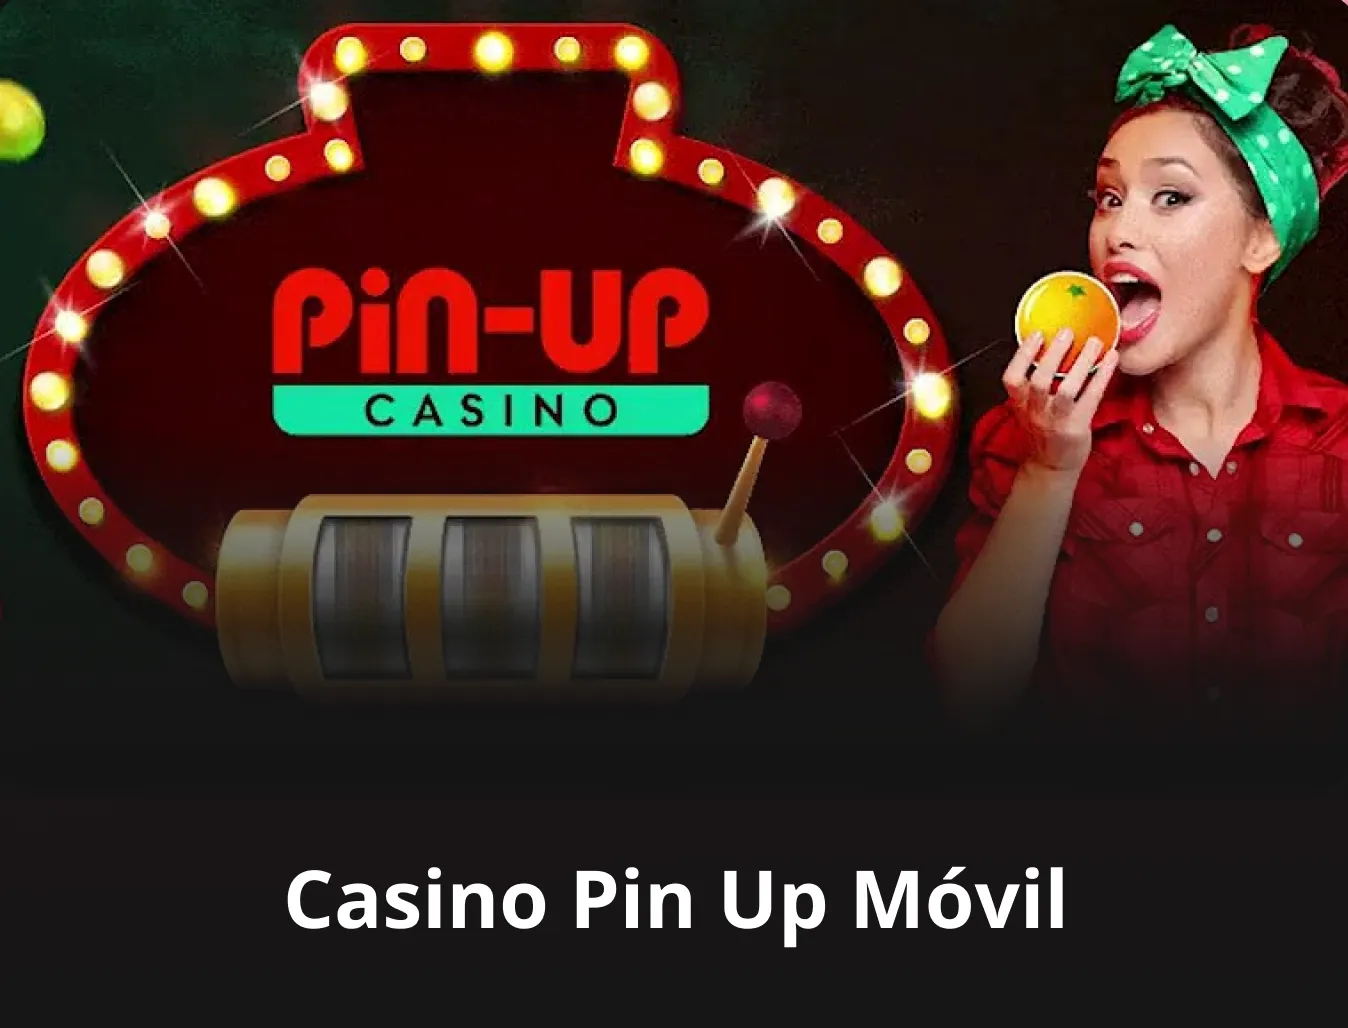 casino pin up móvil